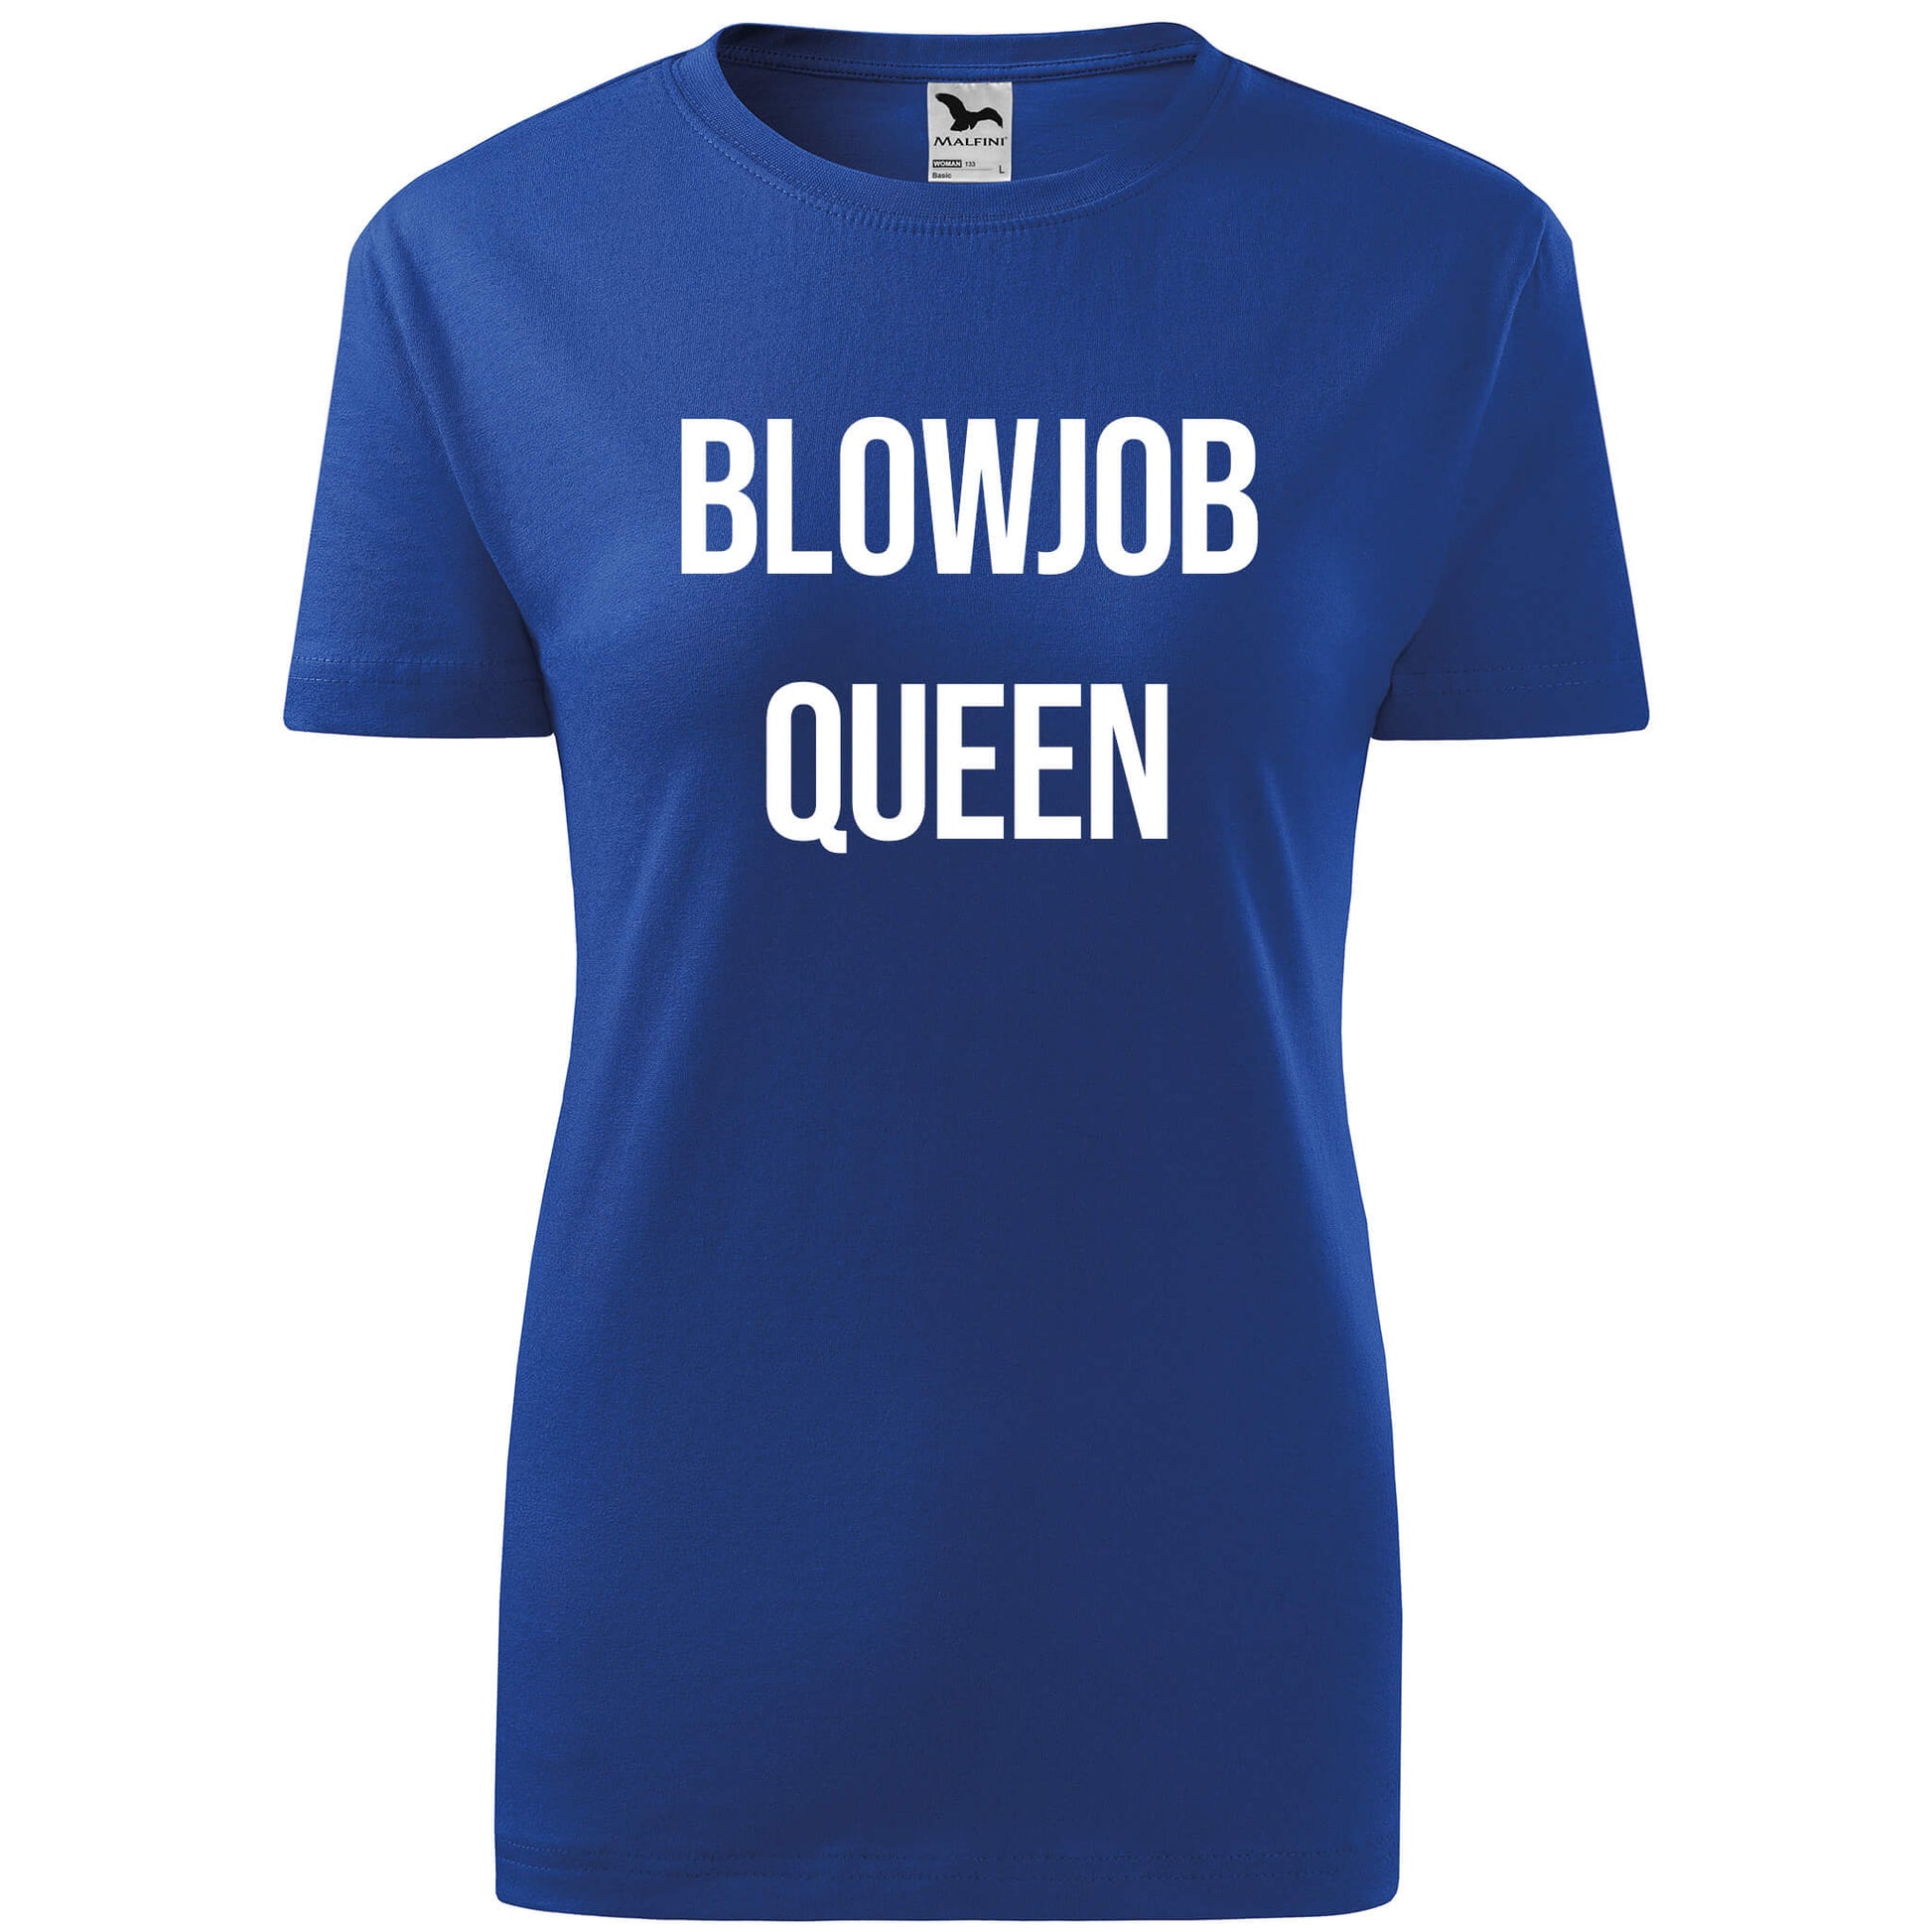 T-shirt - Blowjob queen - rvdesignprint